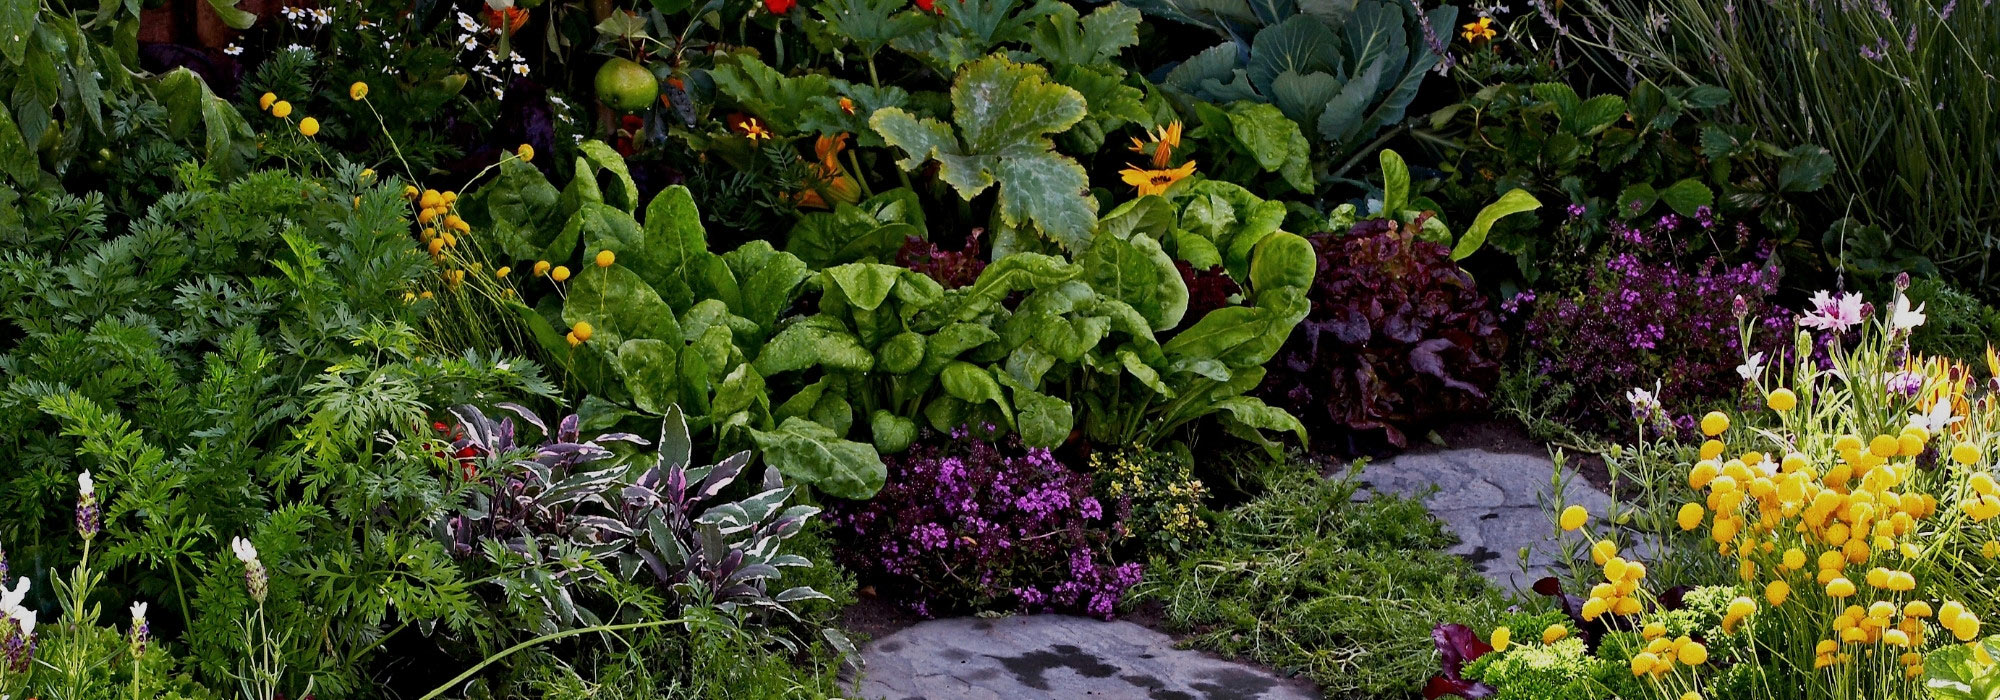 Le jardin édimentaire : beau et productif à la fois !